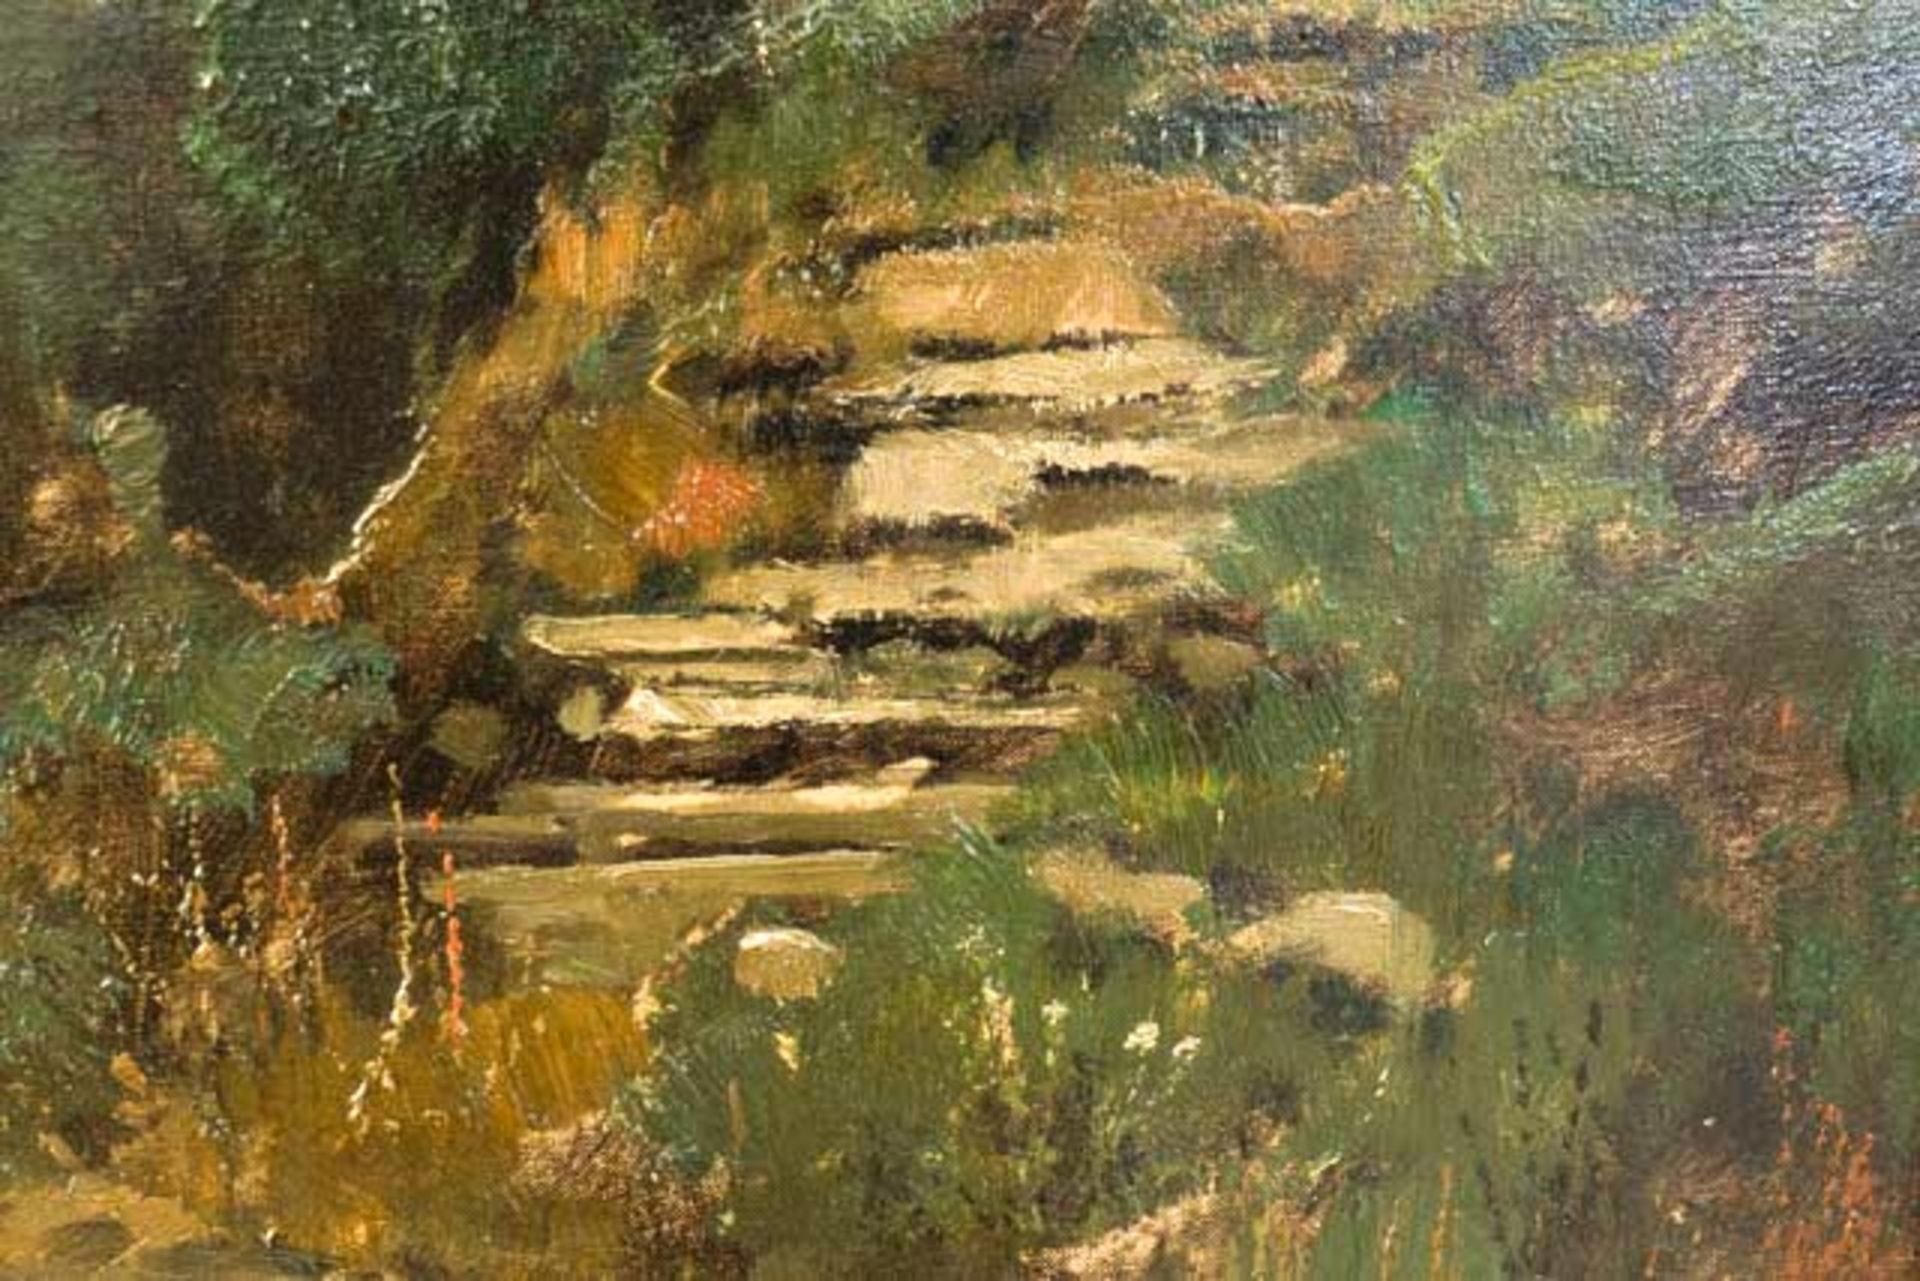 Gemälde "Mühle in Landschaft" - Bild 5 aus 7